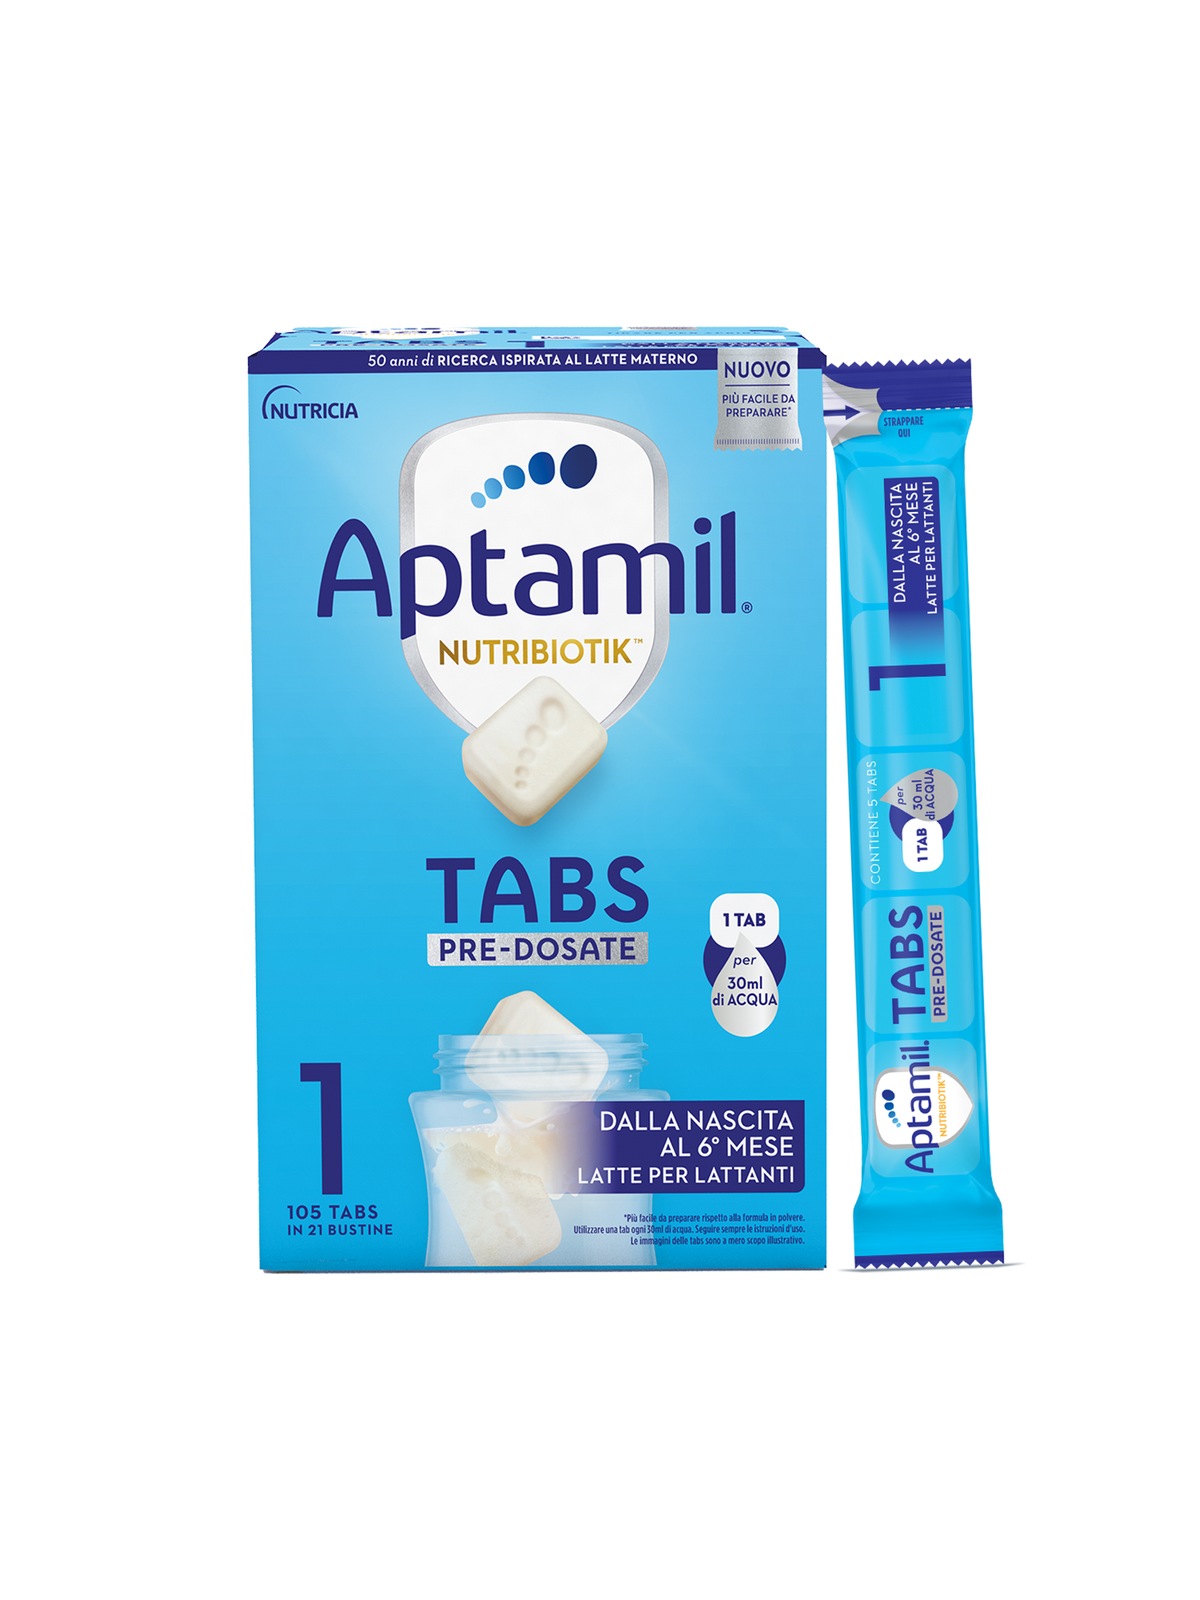 Aptamil nutribiotik tabs 1 pre-dosate - latte per lattanti in tabs pre-dosate - dalla nascita fino al 6° mese compiuto - confezione da 21 bustine (105 tabs pre-dosate) - Aptamil